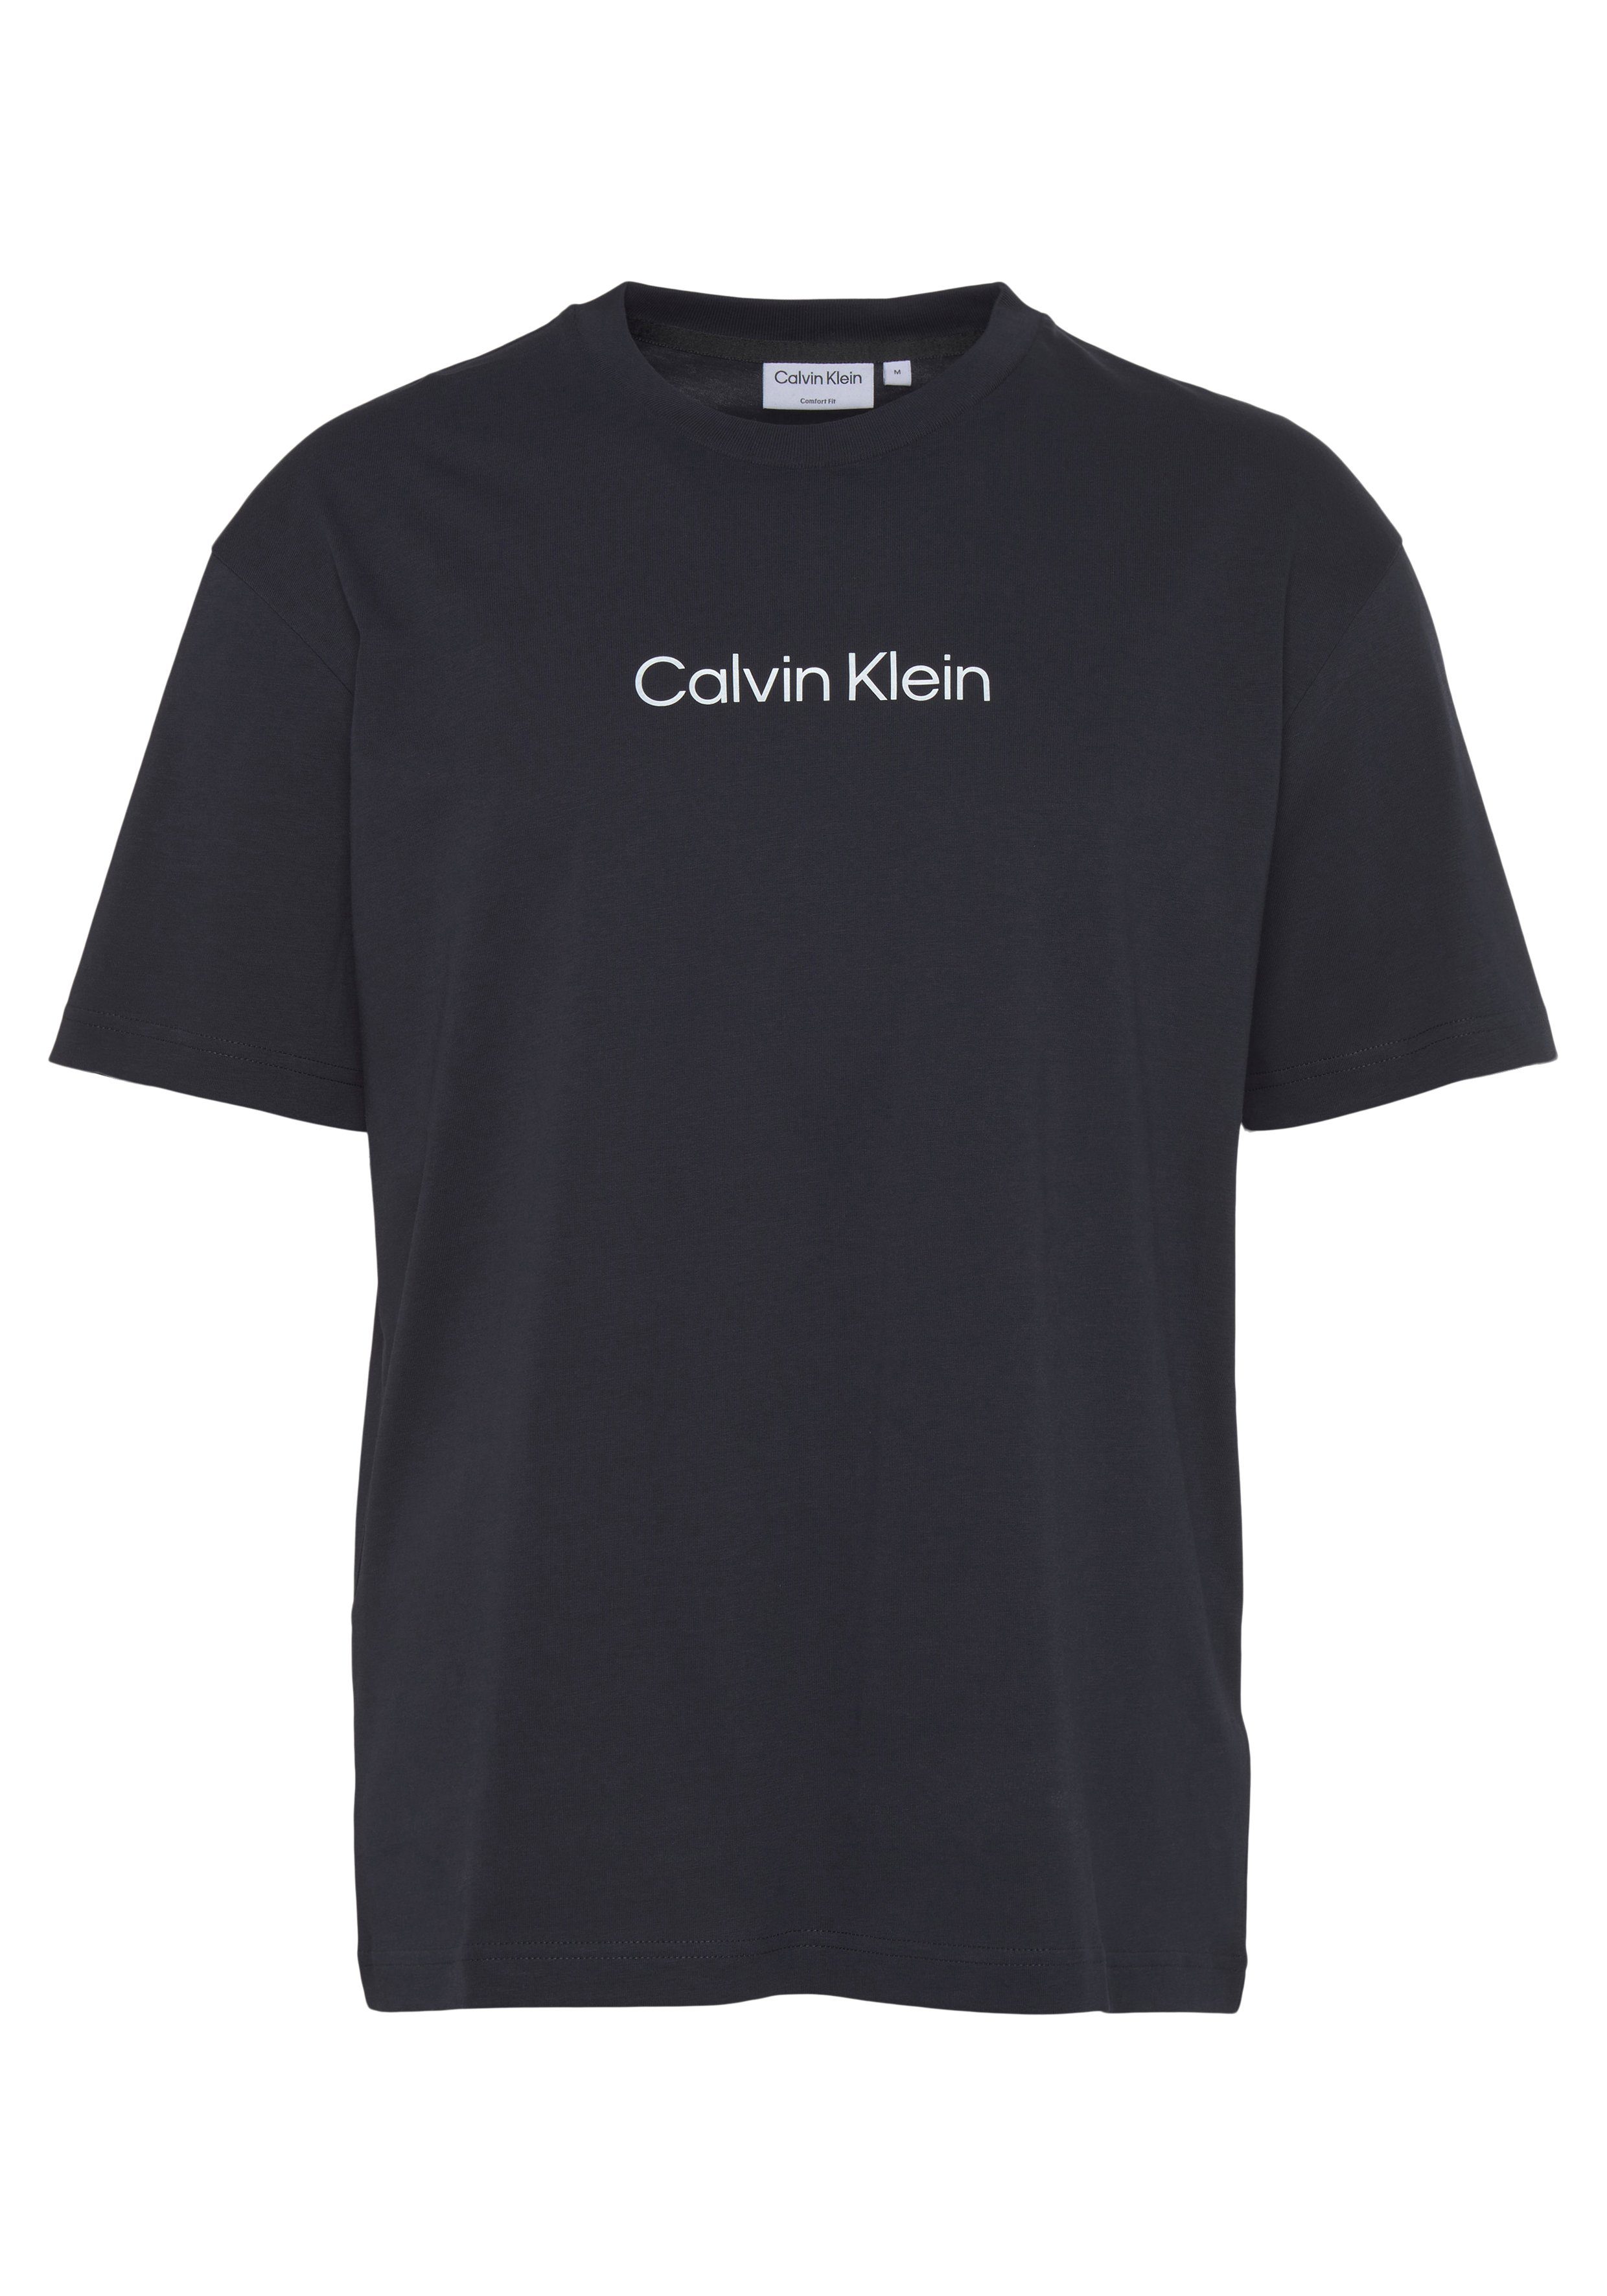 COMFORT Night Markenlabel HERO T-SHIRT aufgedrucktem mit LOGO Klein Calvin Sky T-Shirt